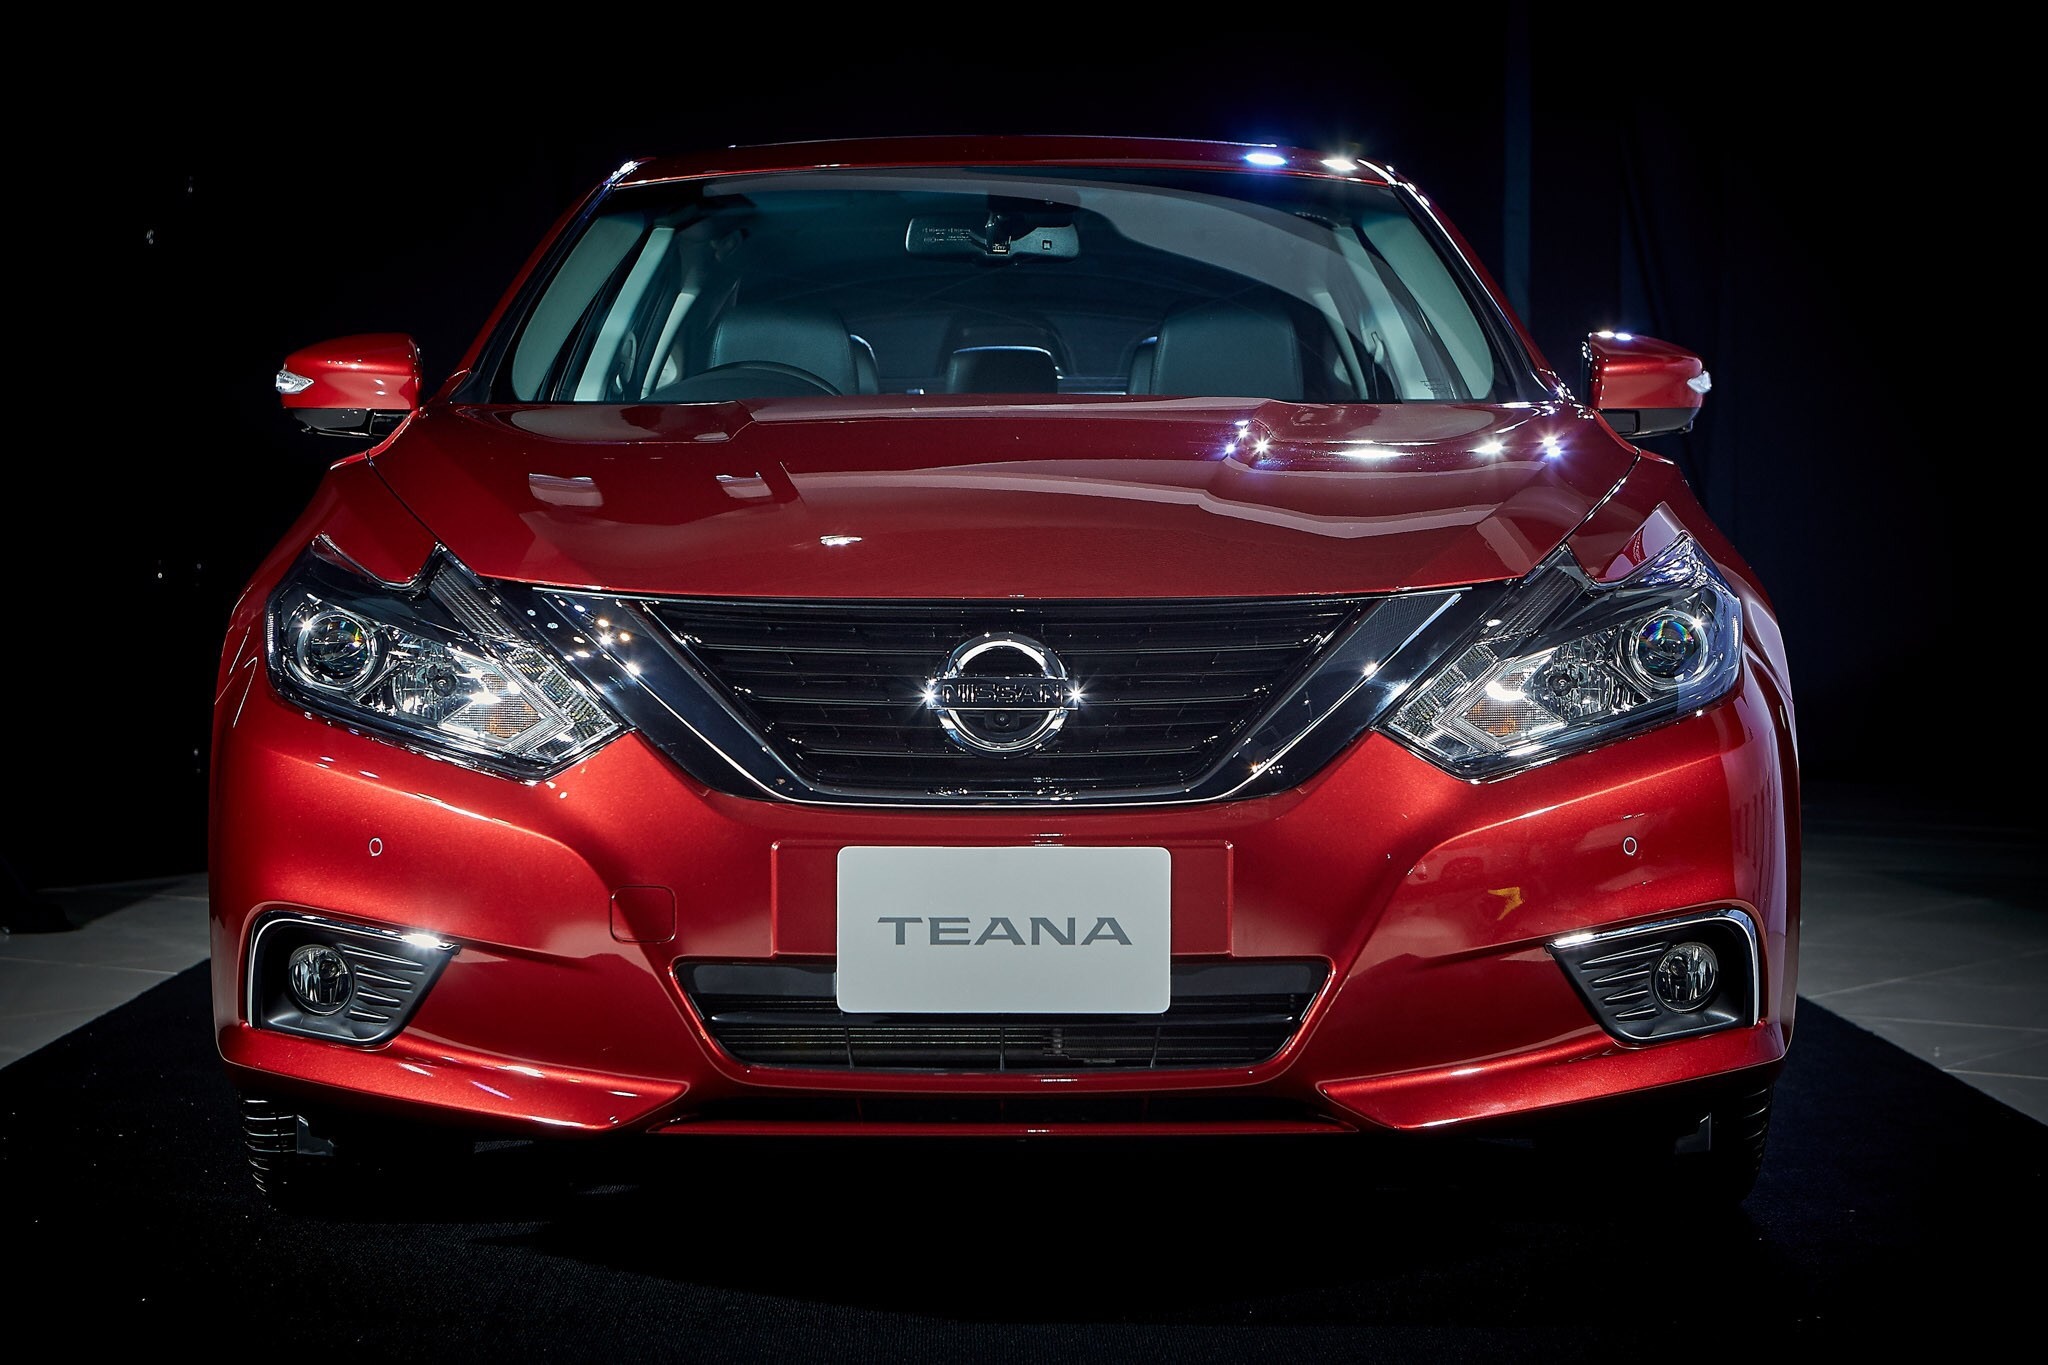 Nissan Teana 2.0 XE 2019 นิสสัน เทียน่า ปี 2019 : ภาพที่ 3